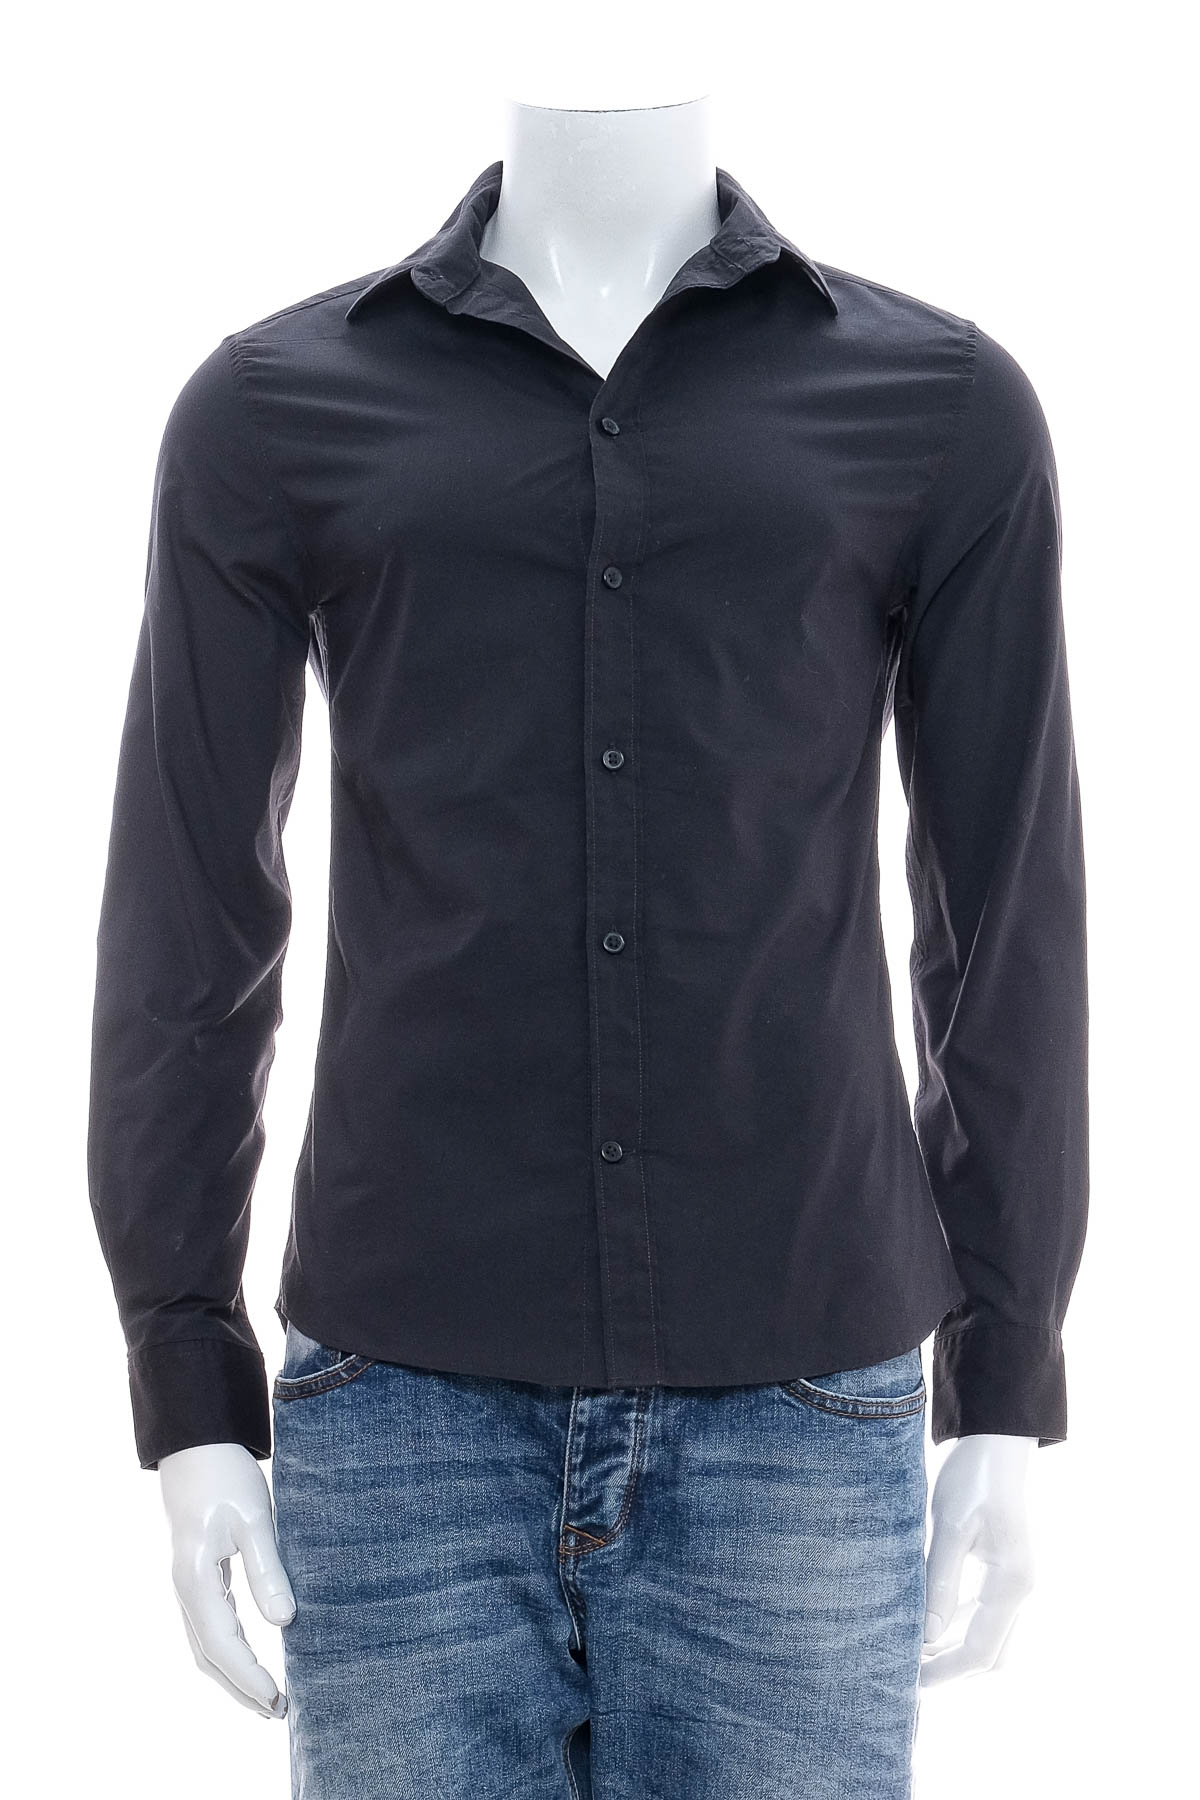 Ανδρικό πουκάμισο - H&M - 0